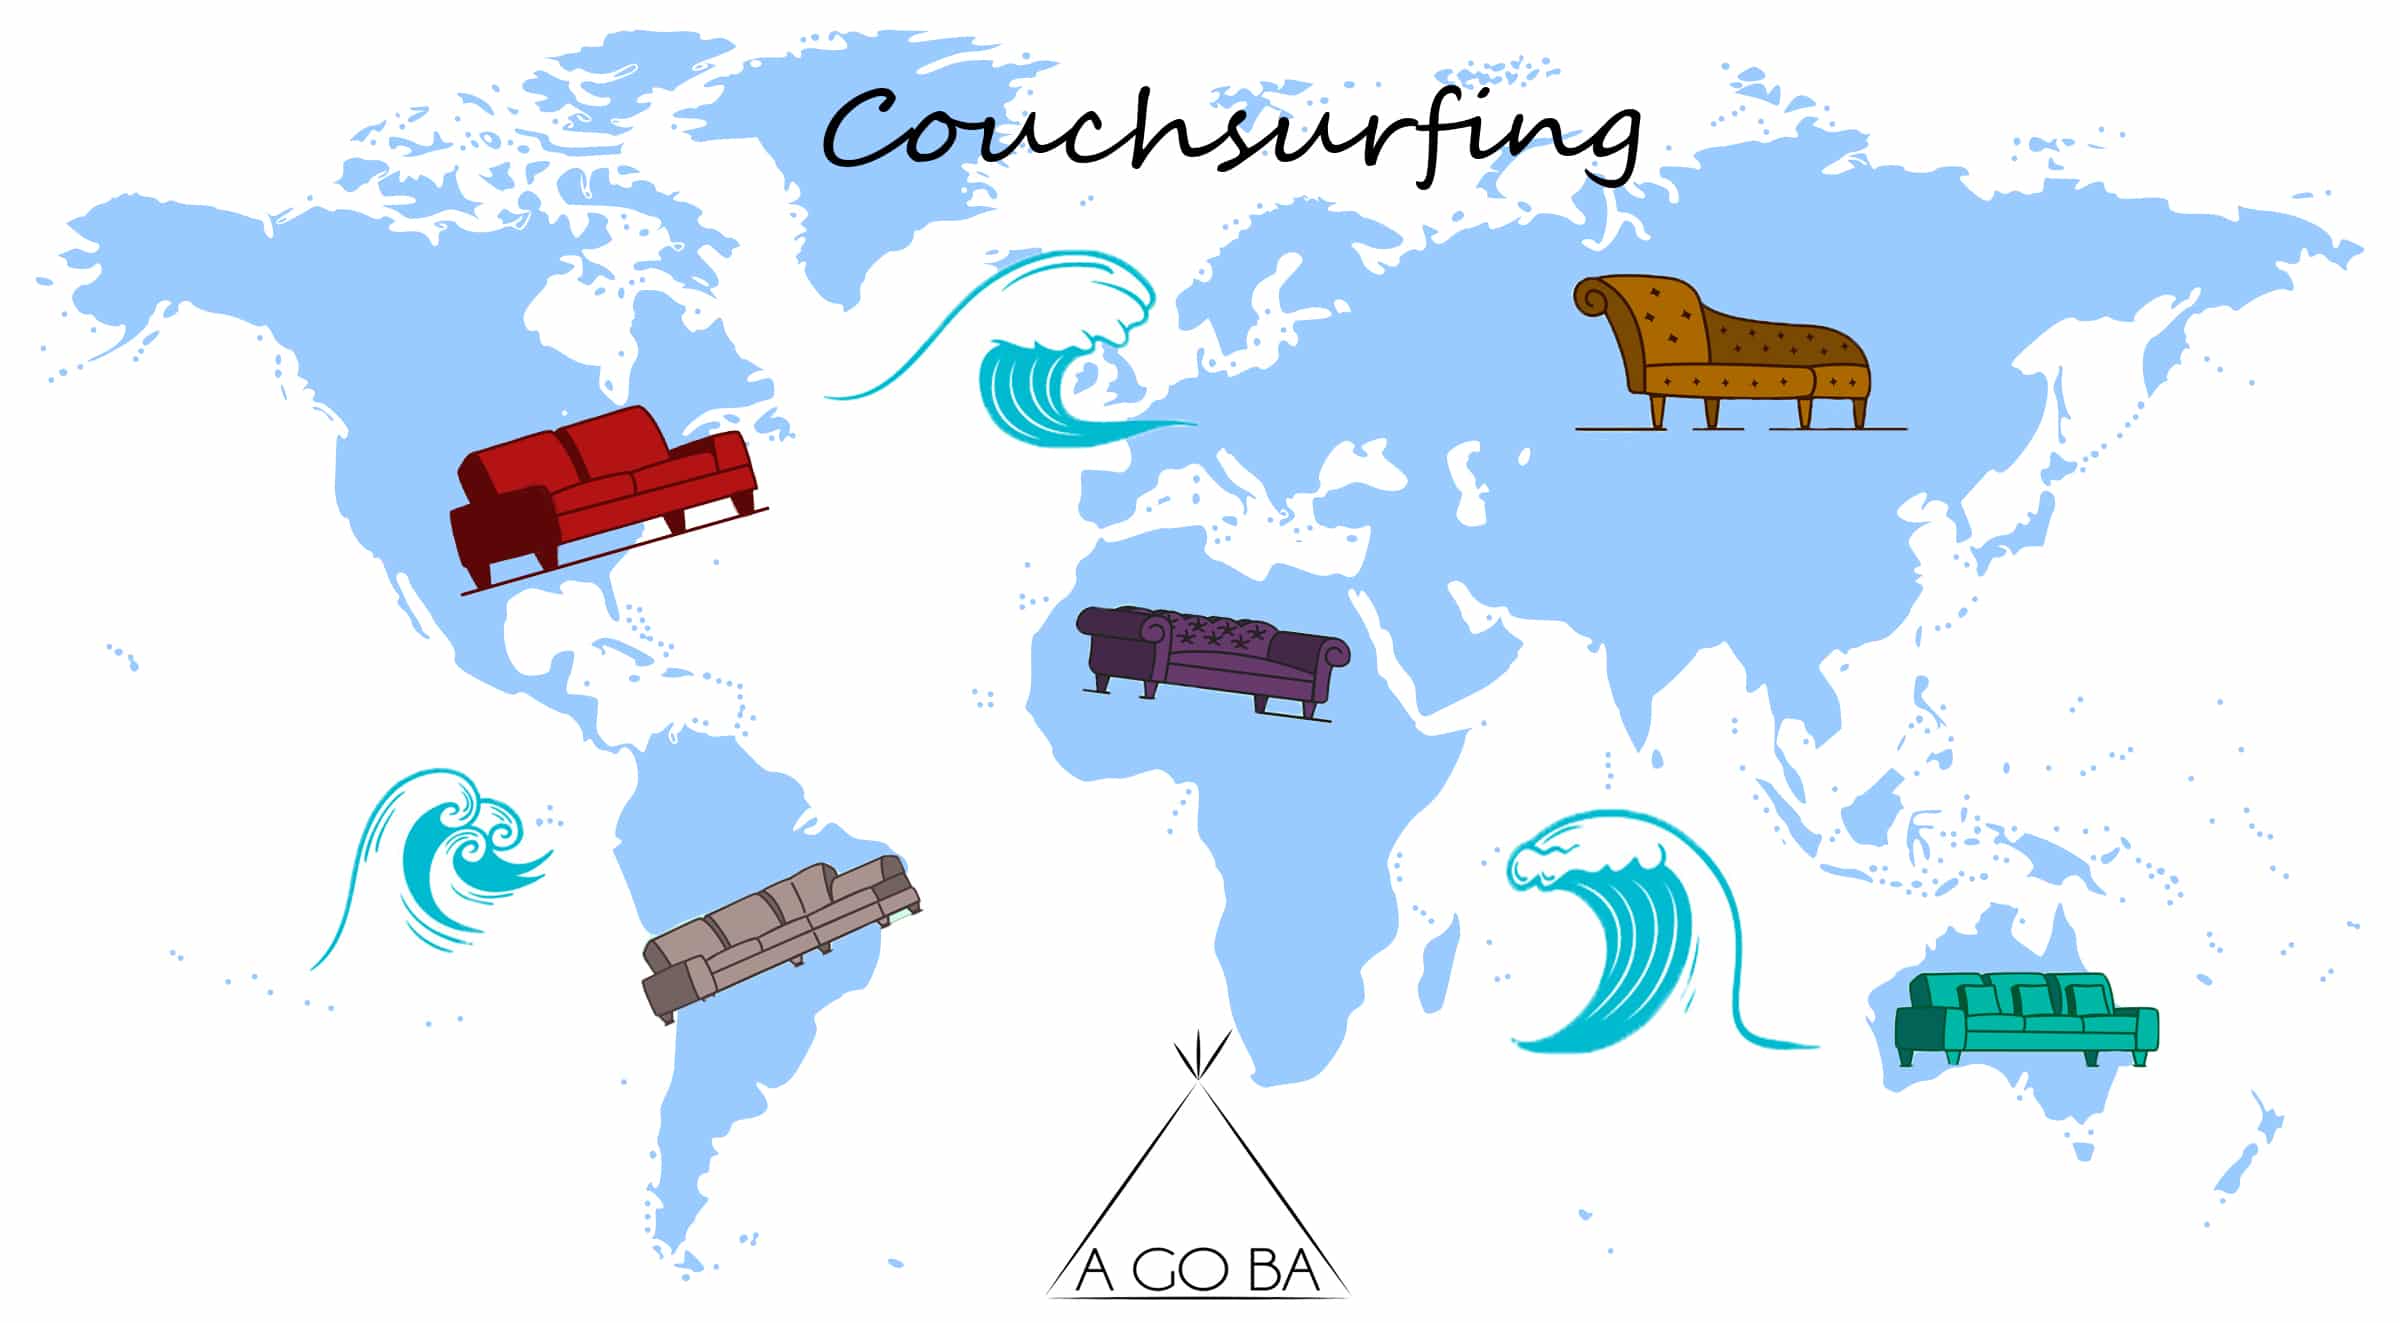 Guia sobre couchsurfing viajar barato